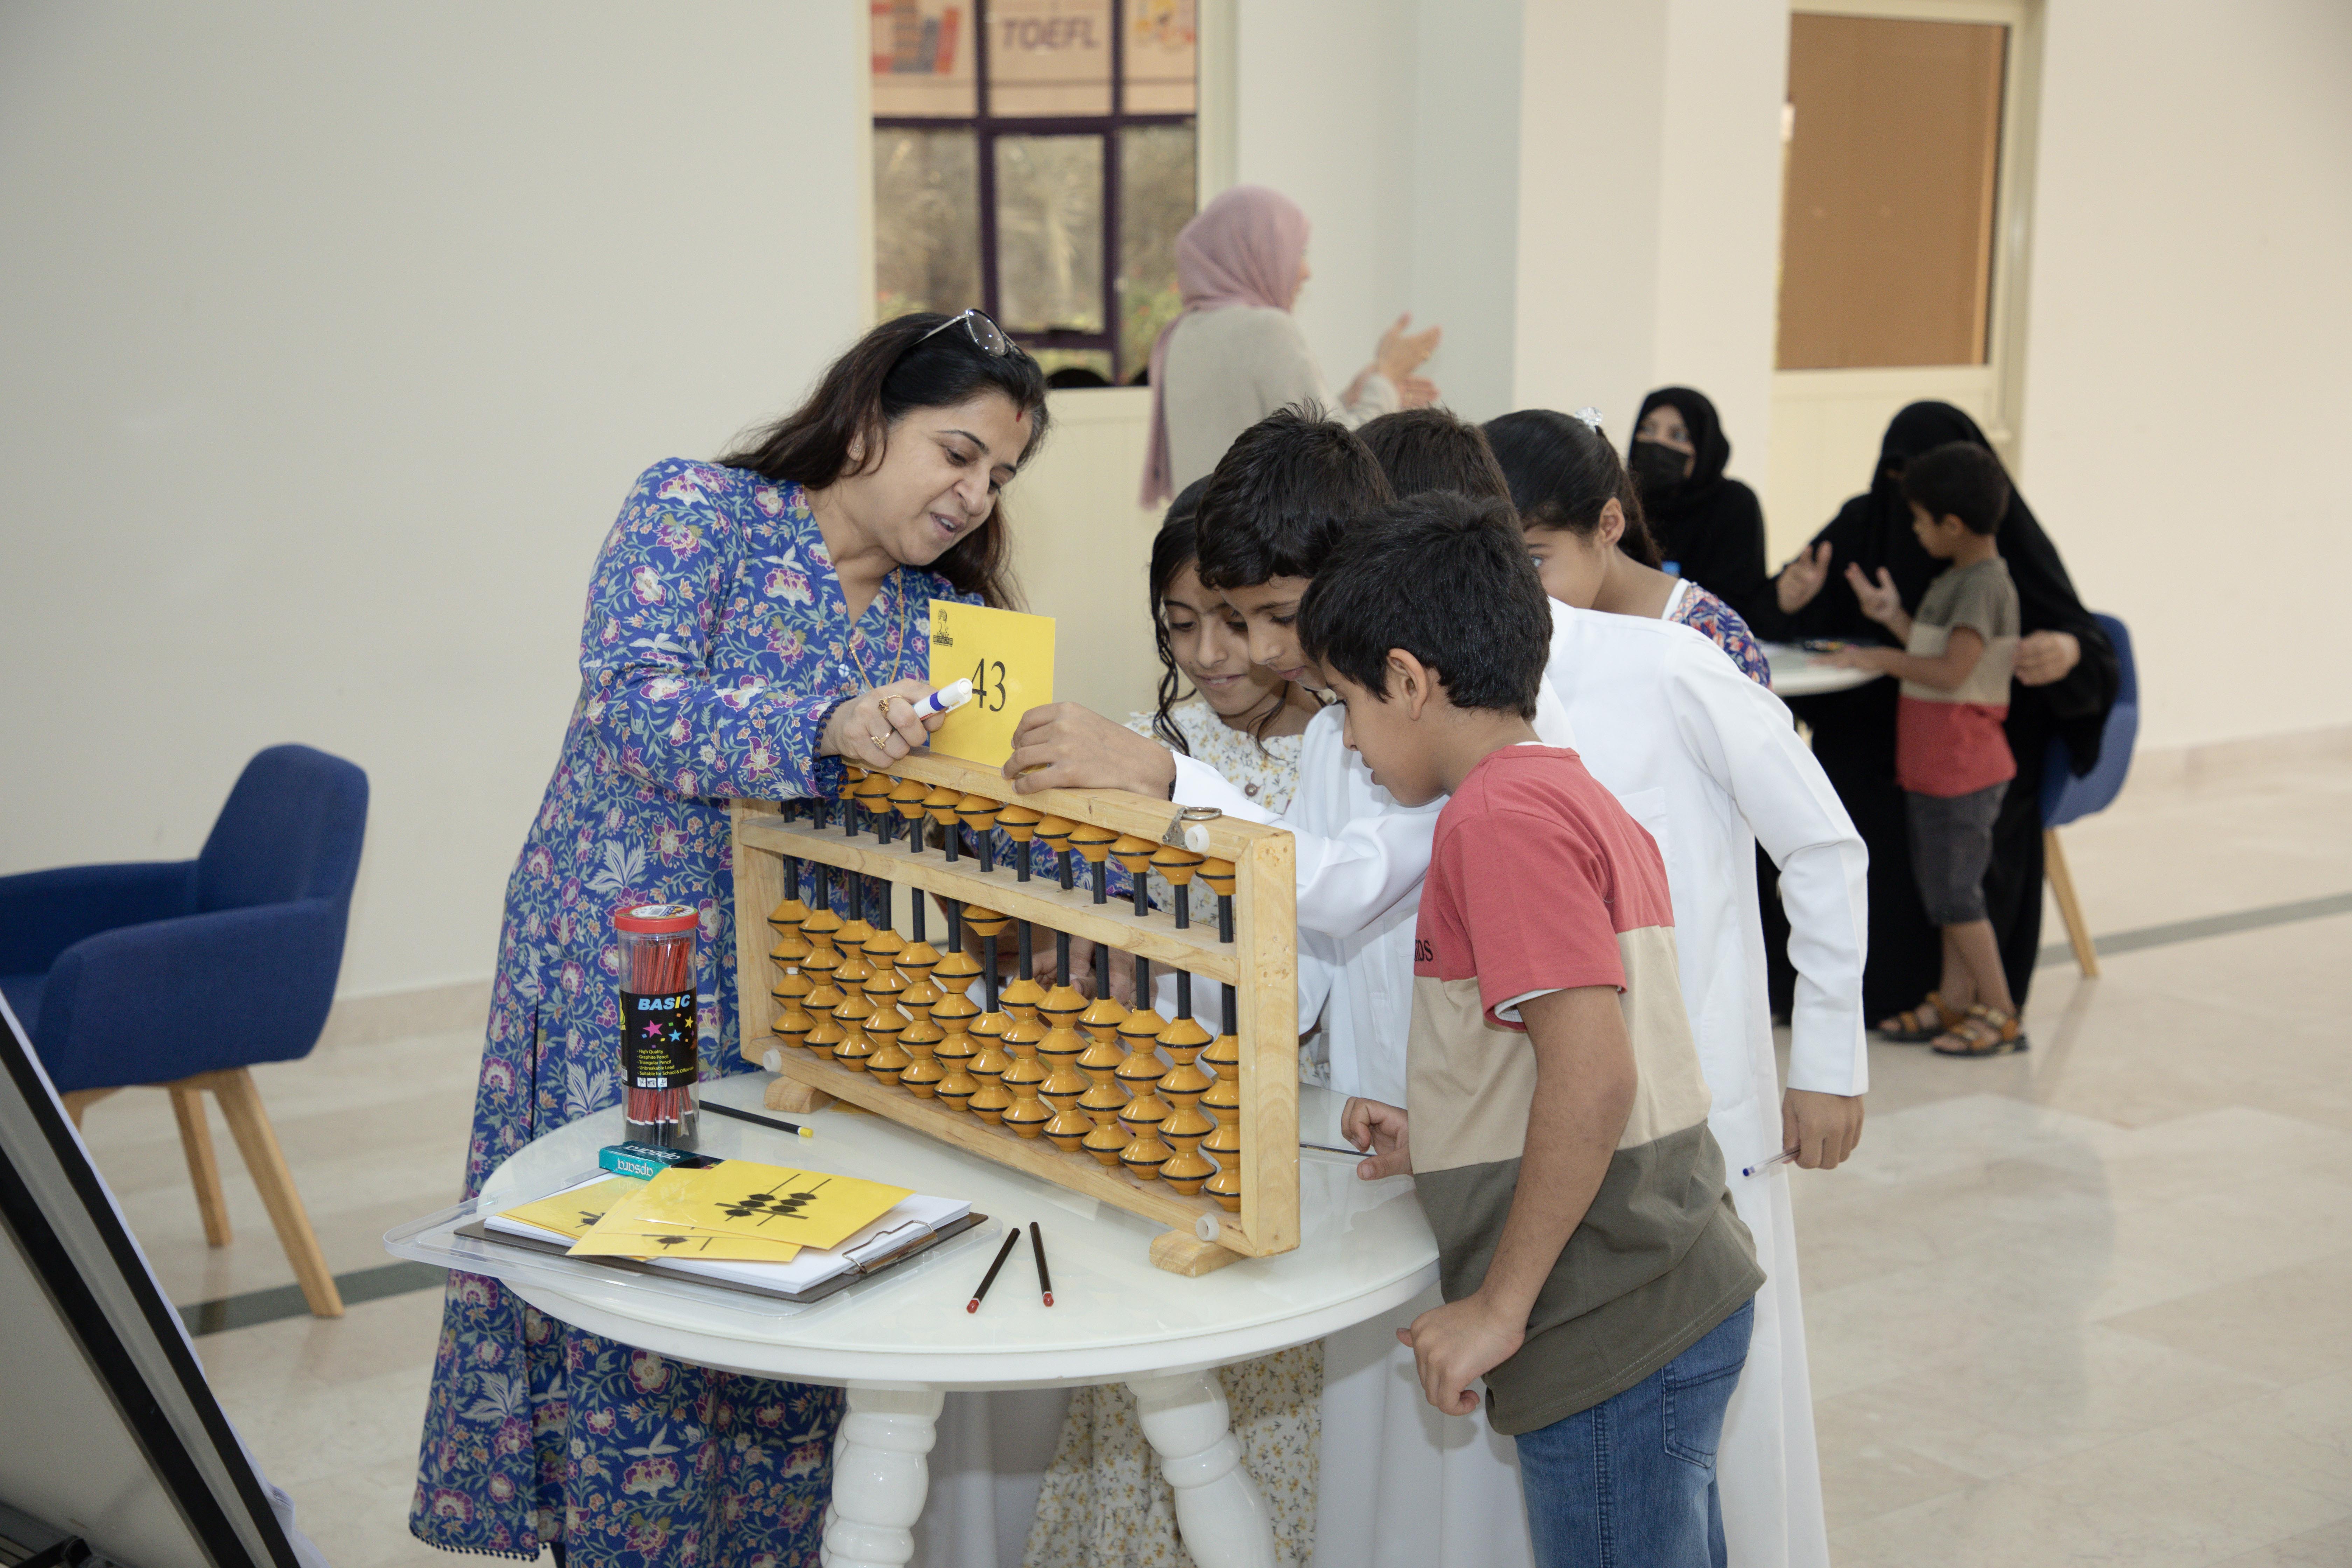 نادي الذيد ينظم ورشة مهارات الحساب الذهني: تفاعل بين الأمهات والأطفال